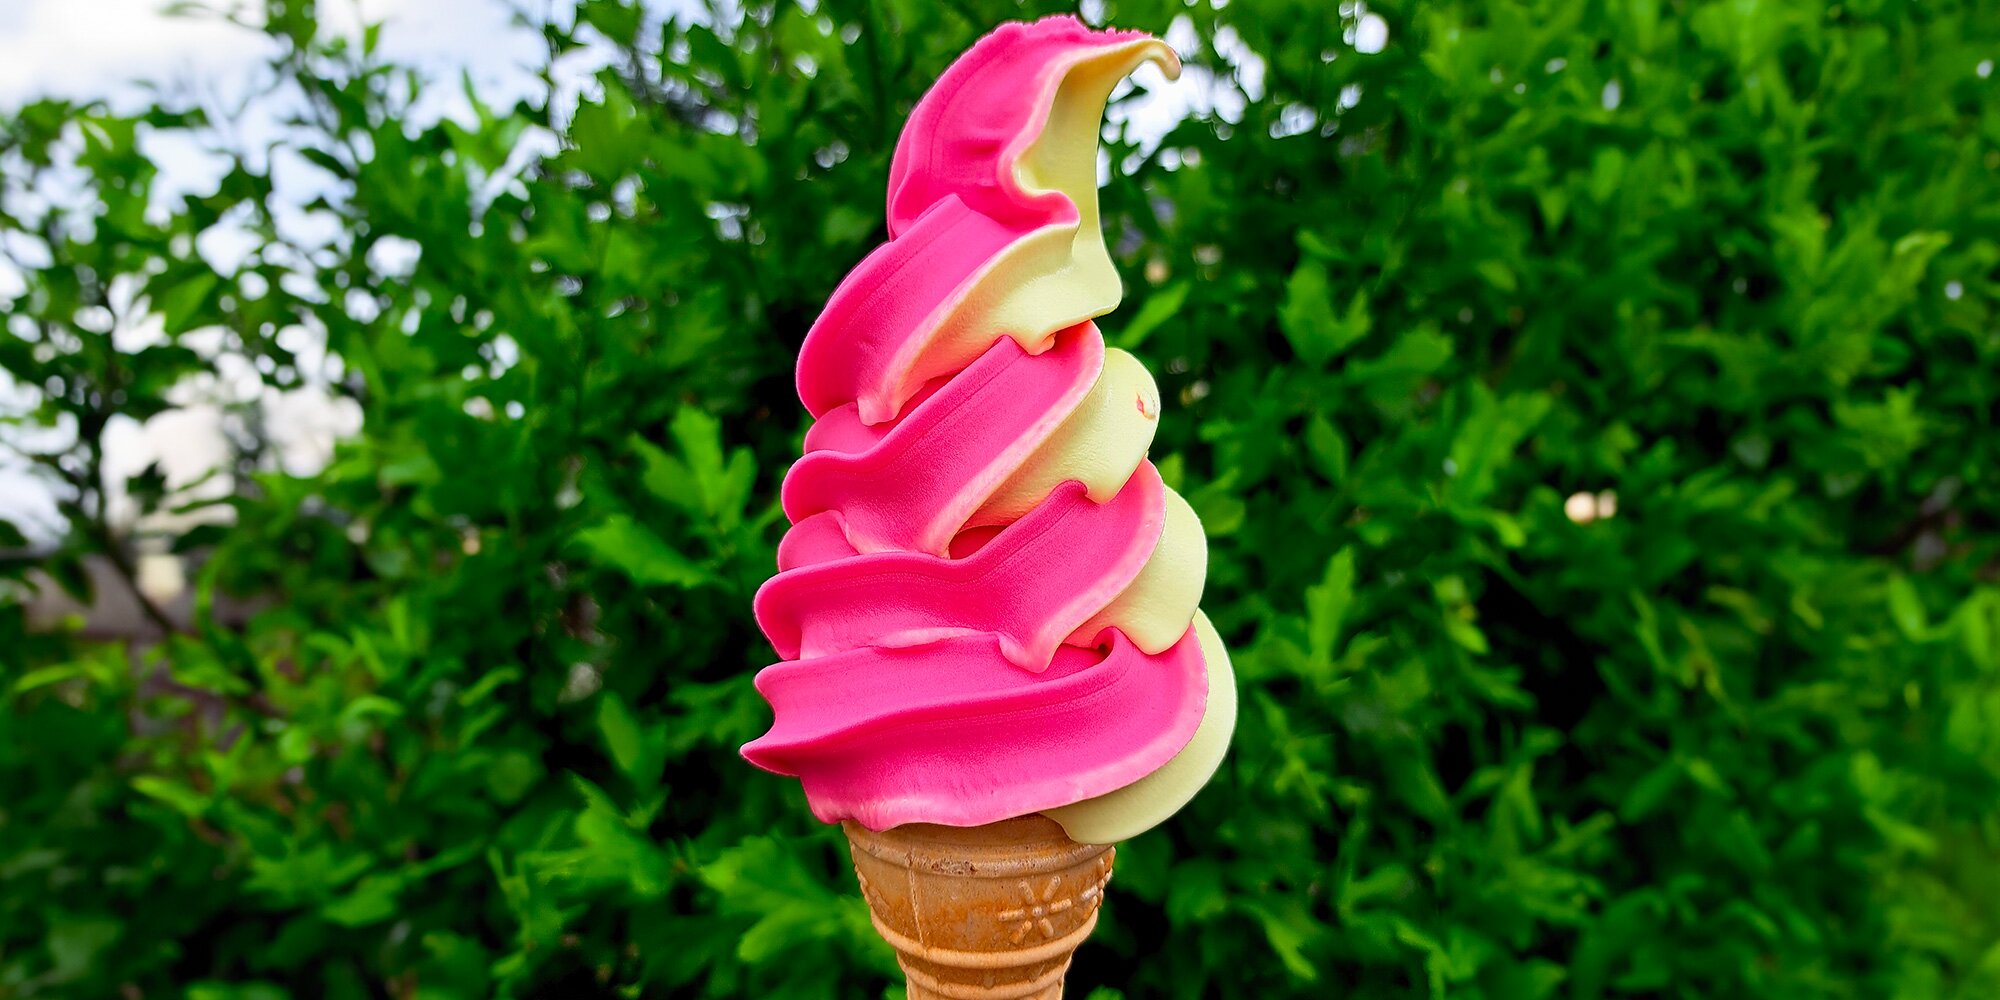 Letní osvěžení: velká točená zmrzlina na Špilberku